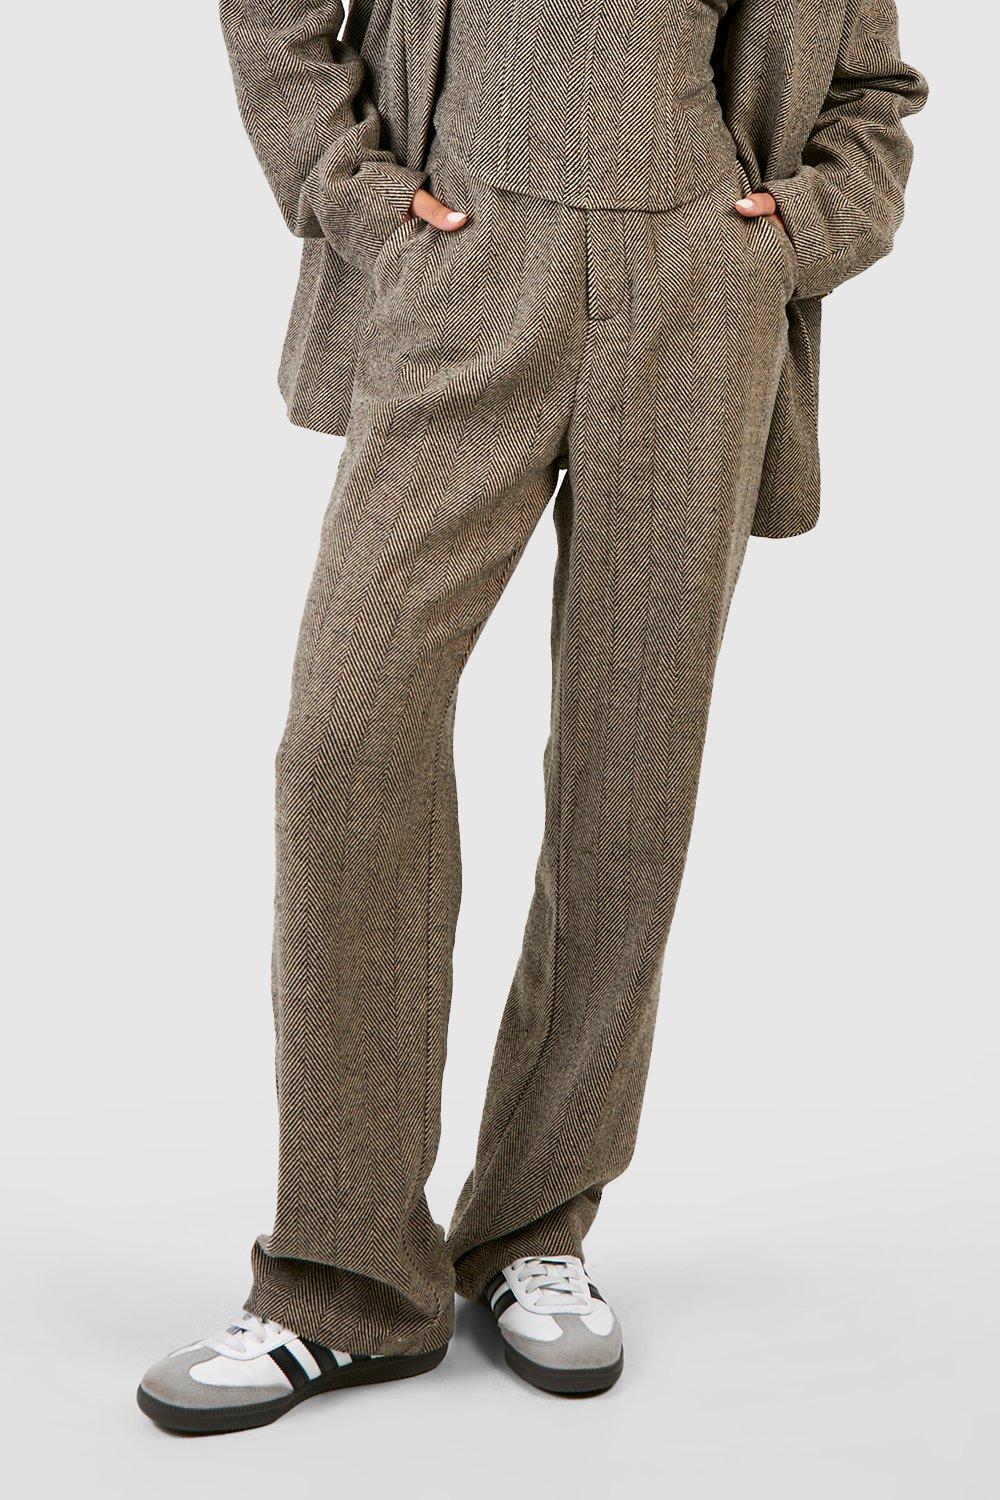 Men Herringbone Tweed Pants Wool Blend Straight Leg Trousers Casual Slim  Bottoms